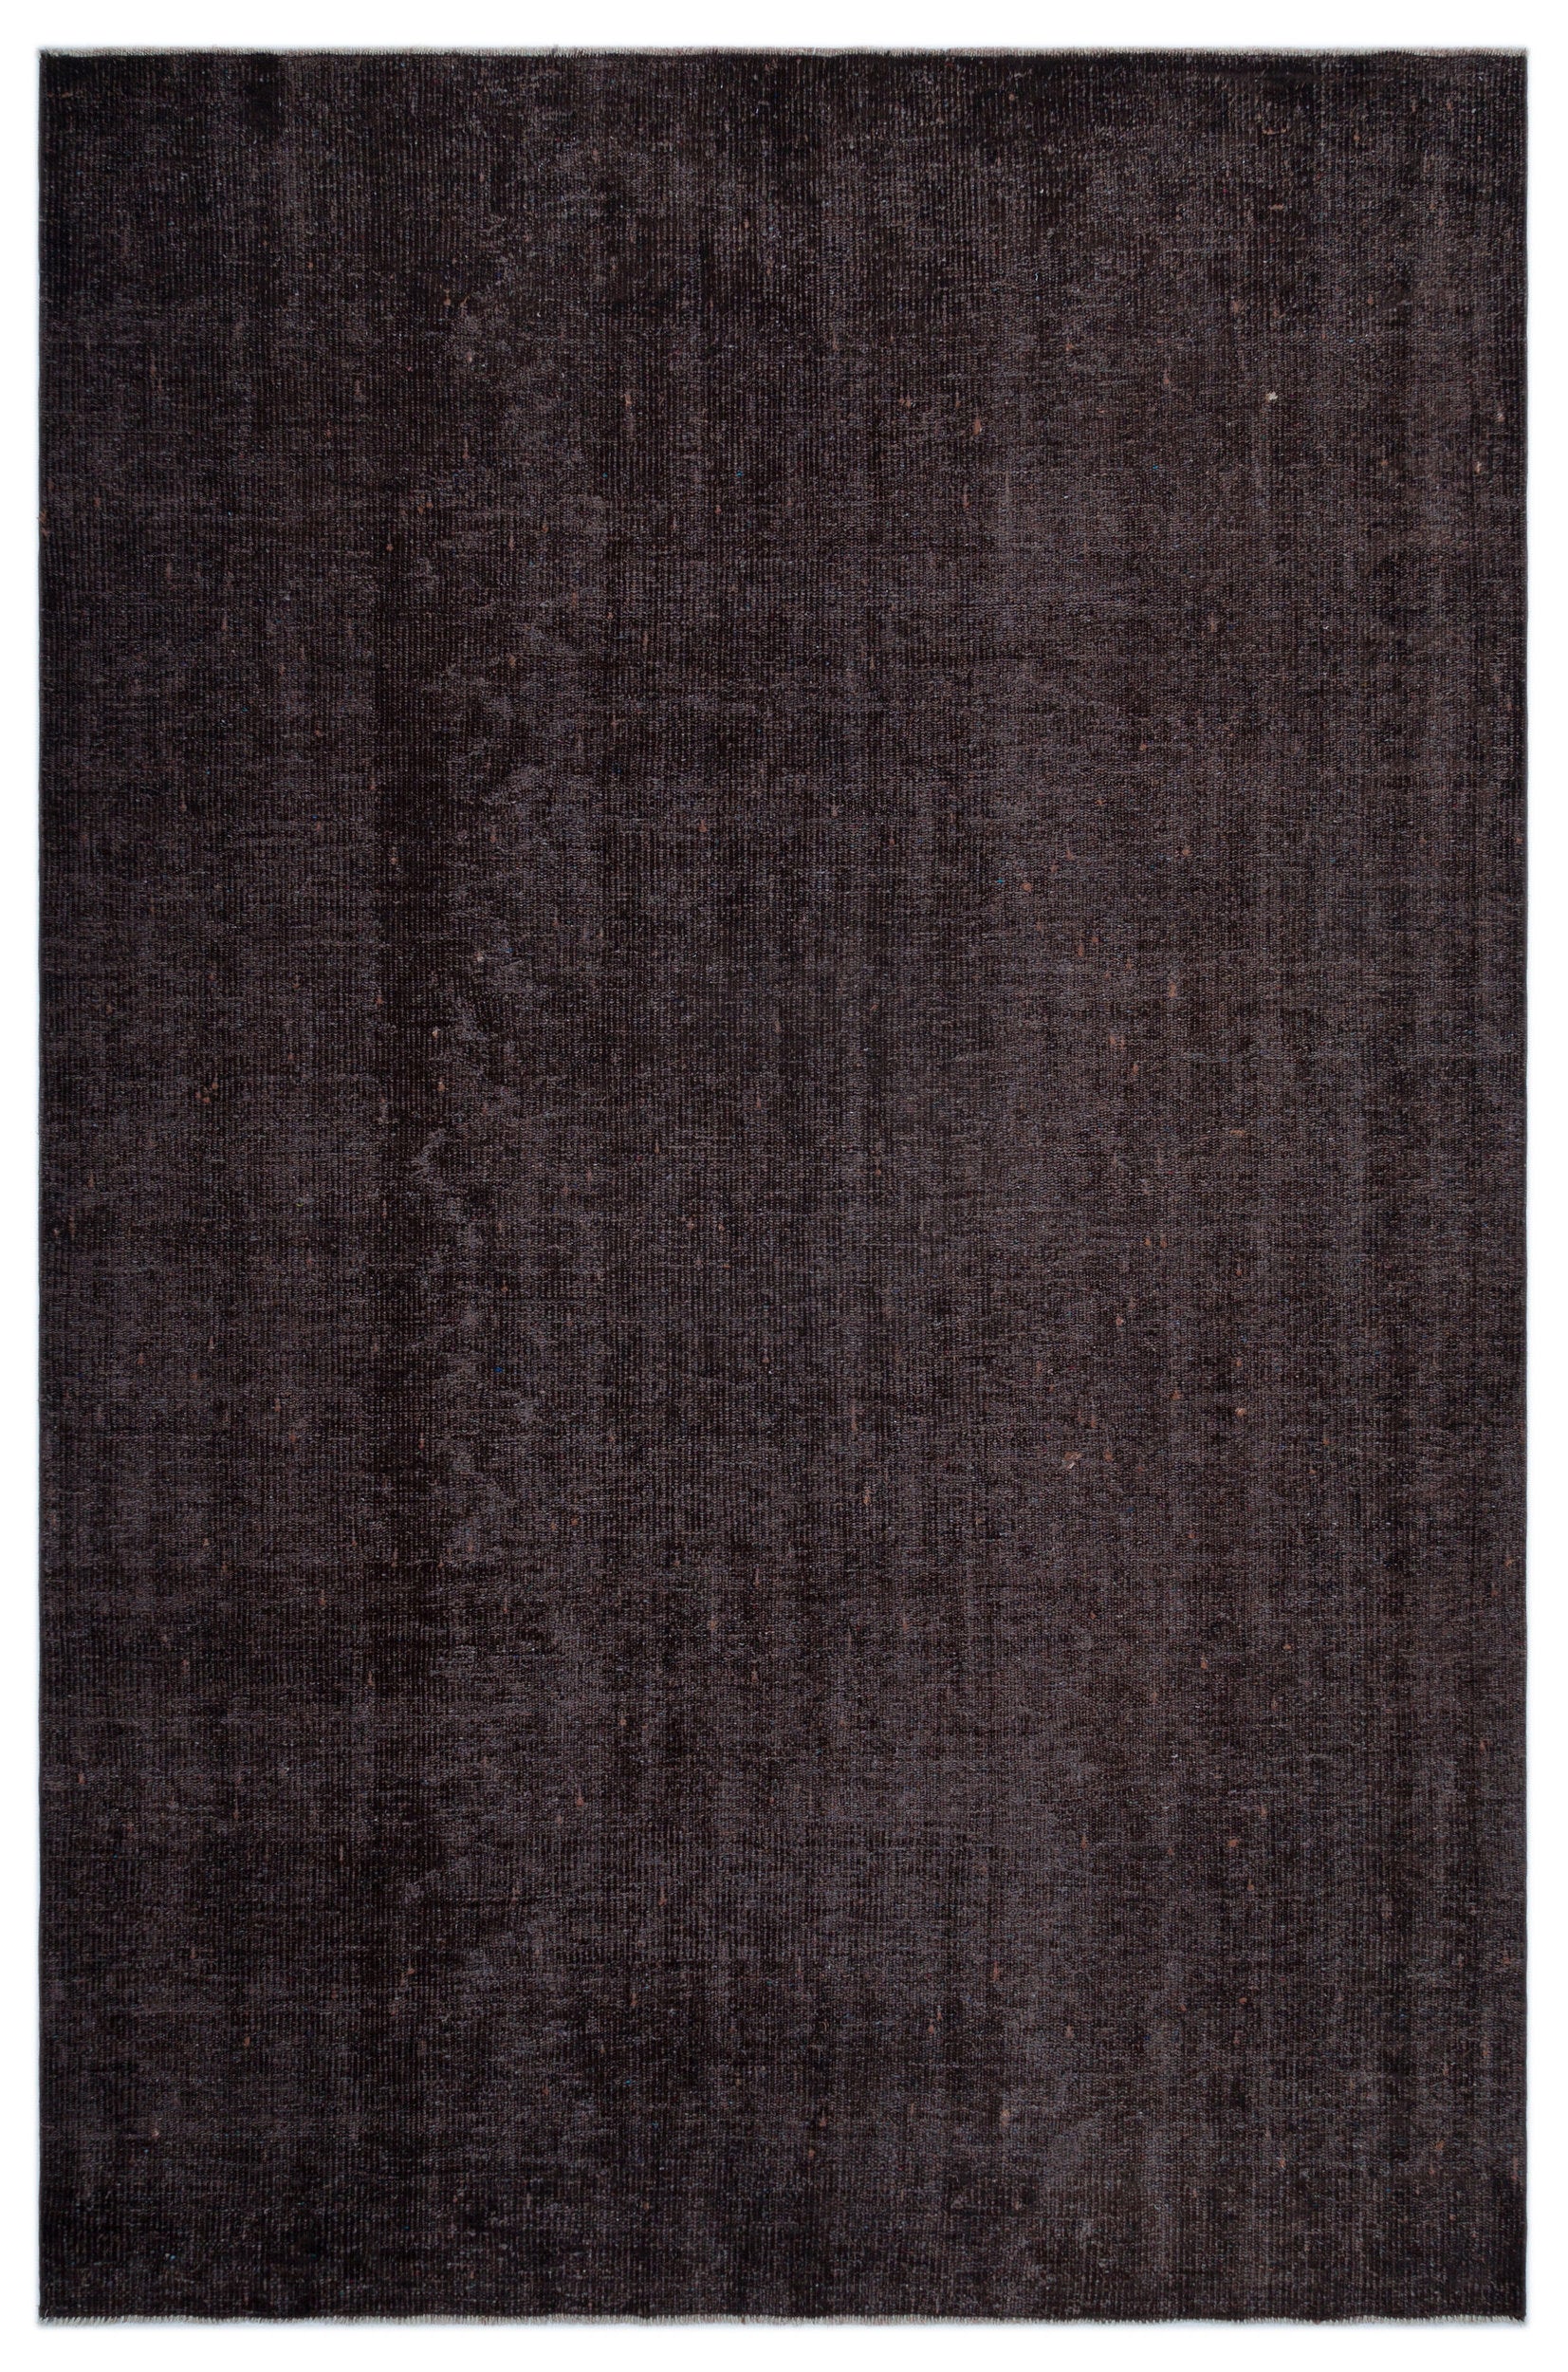 Black Over Dyed Vintage Rug 5'10'' x 9'0'' ft 178 x 275 cm